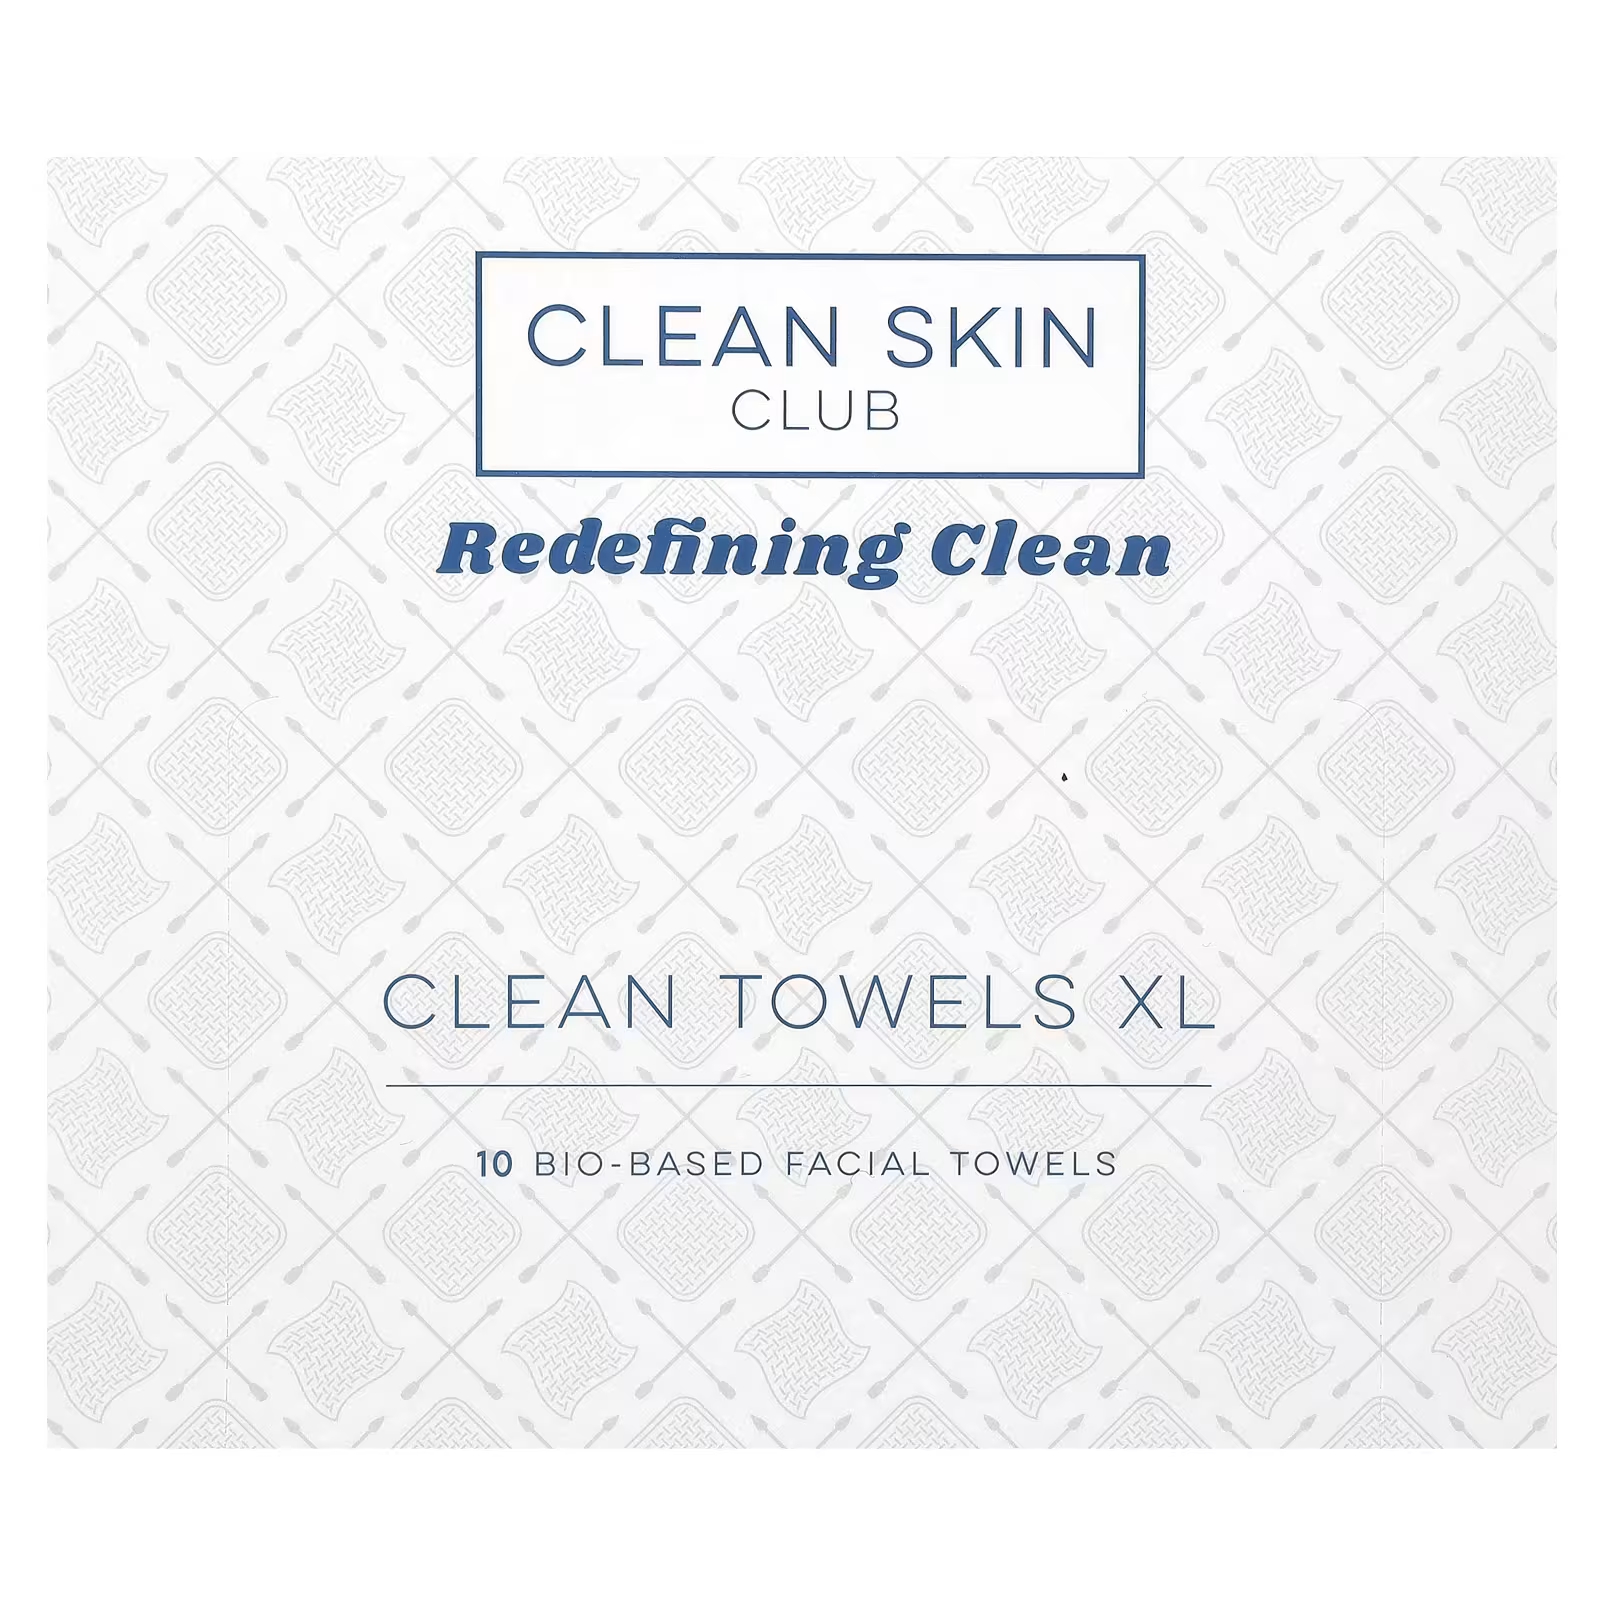 Полотенца для лица Clean Skin Club Clean Towels XL 10 на биологической основе одноразовые нетканые салфетки для татуировок 50 шт упак салфетки из чистой бумаги гигиенические салфетки аксессуары для тату салонов кра